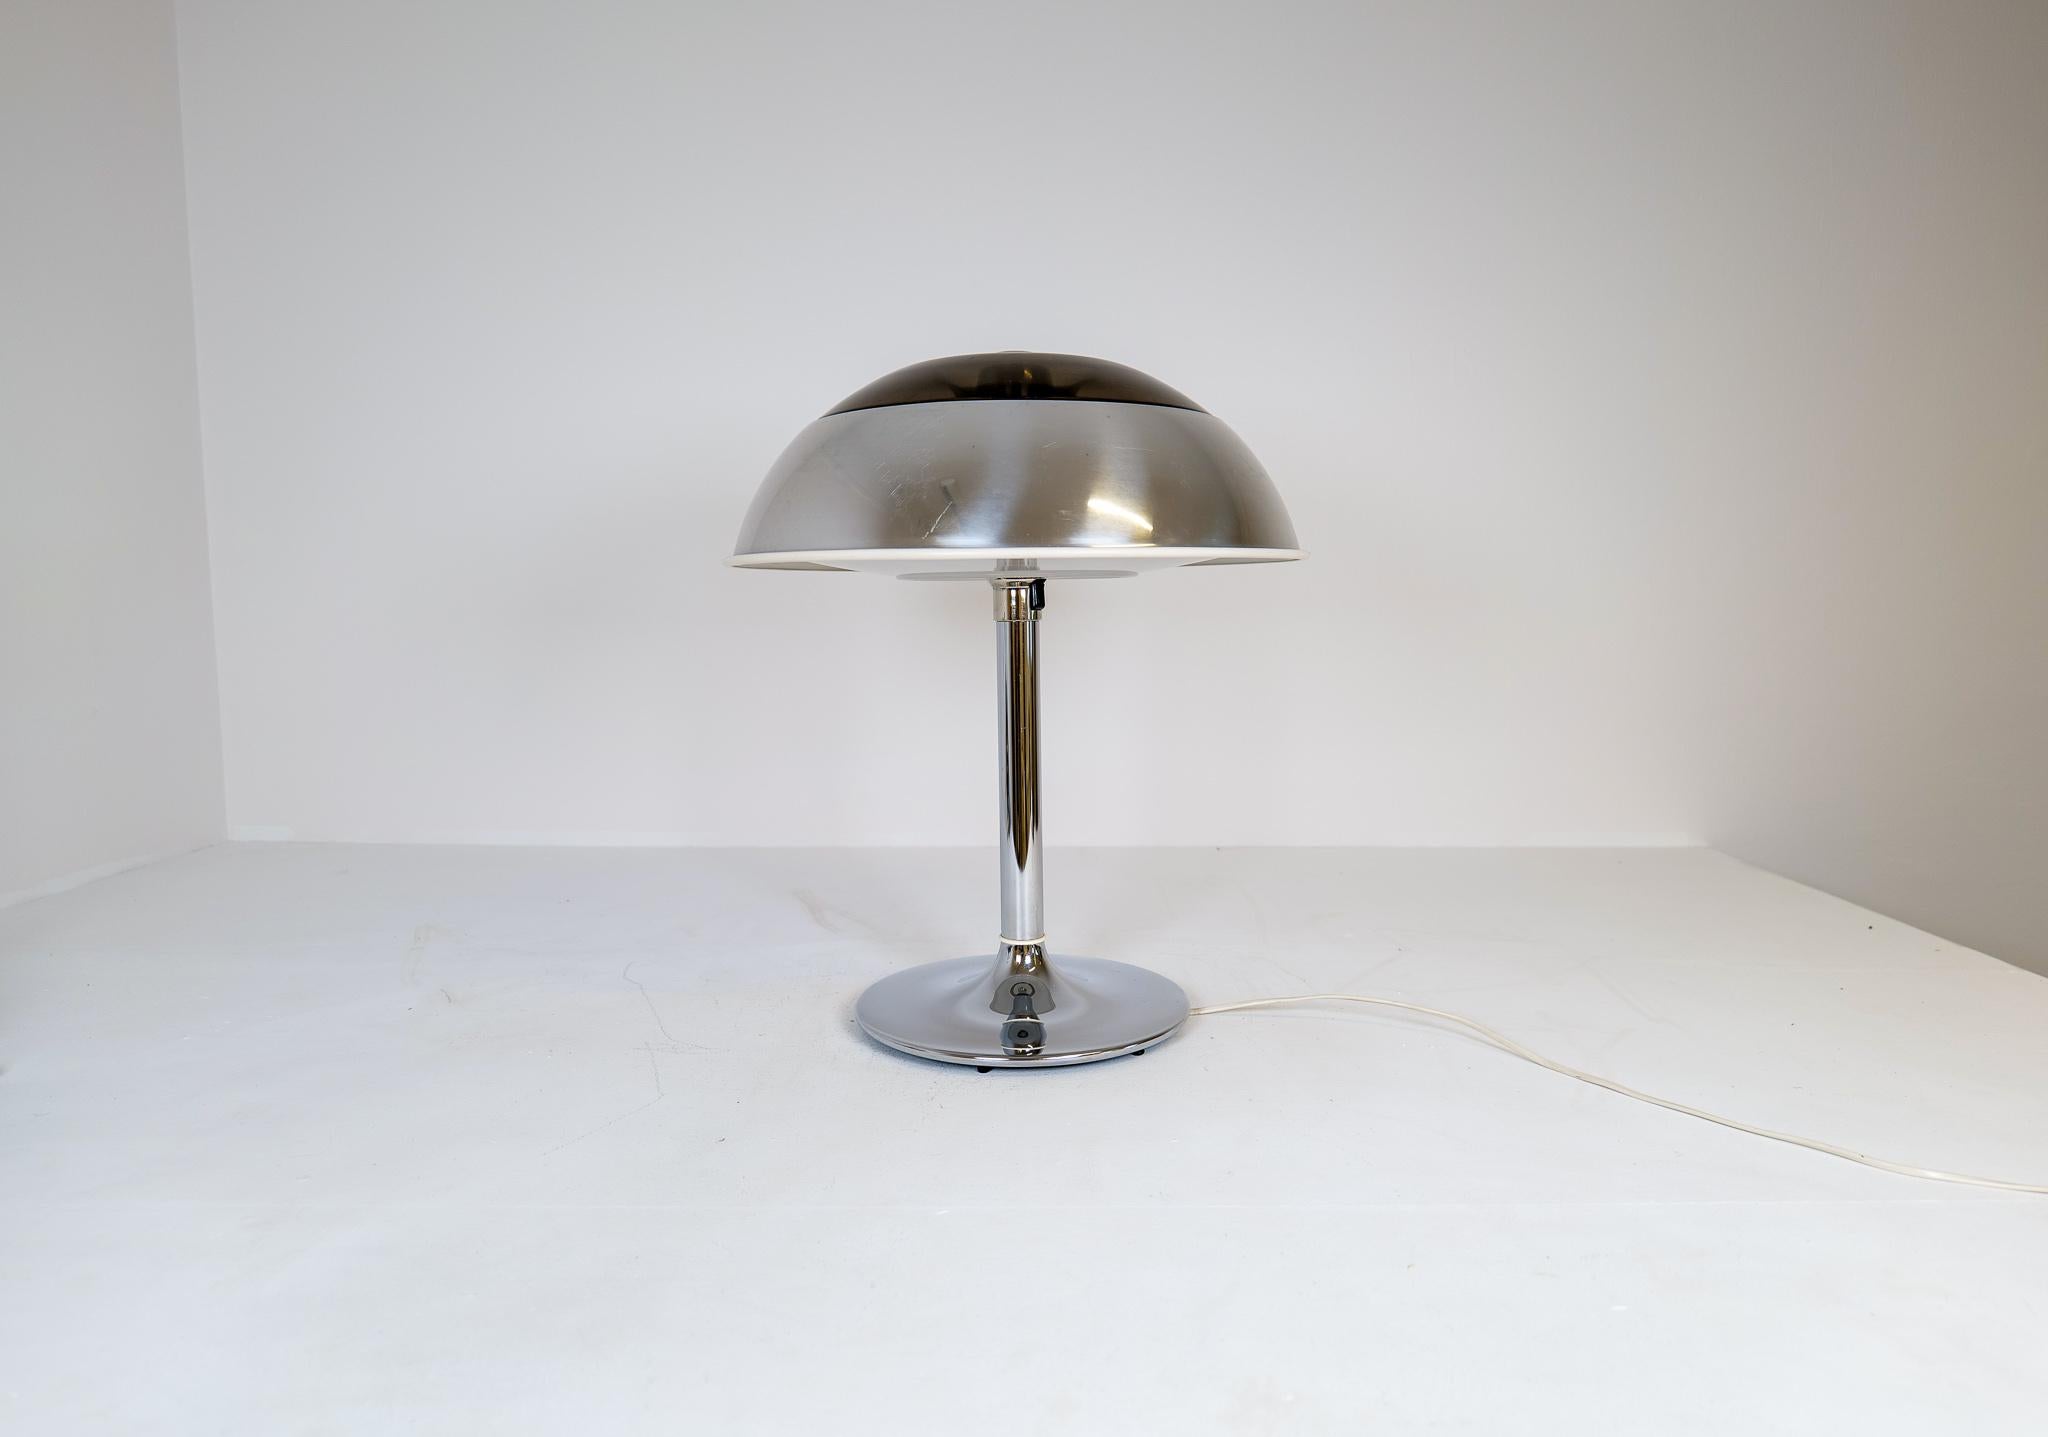 Diese große, verchromte Tischleuchte wurde in den 1970er Jahren bei Fagerhults Belysning in Schweden hergestellt.
Der Schirm ist aus verchromtem Metall und Kunststoff, der Rest aus verchromtem Metall. Wenn sie angezündet wird, gibt sie ein schönes